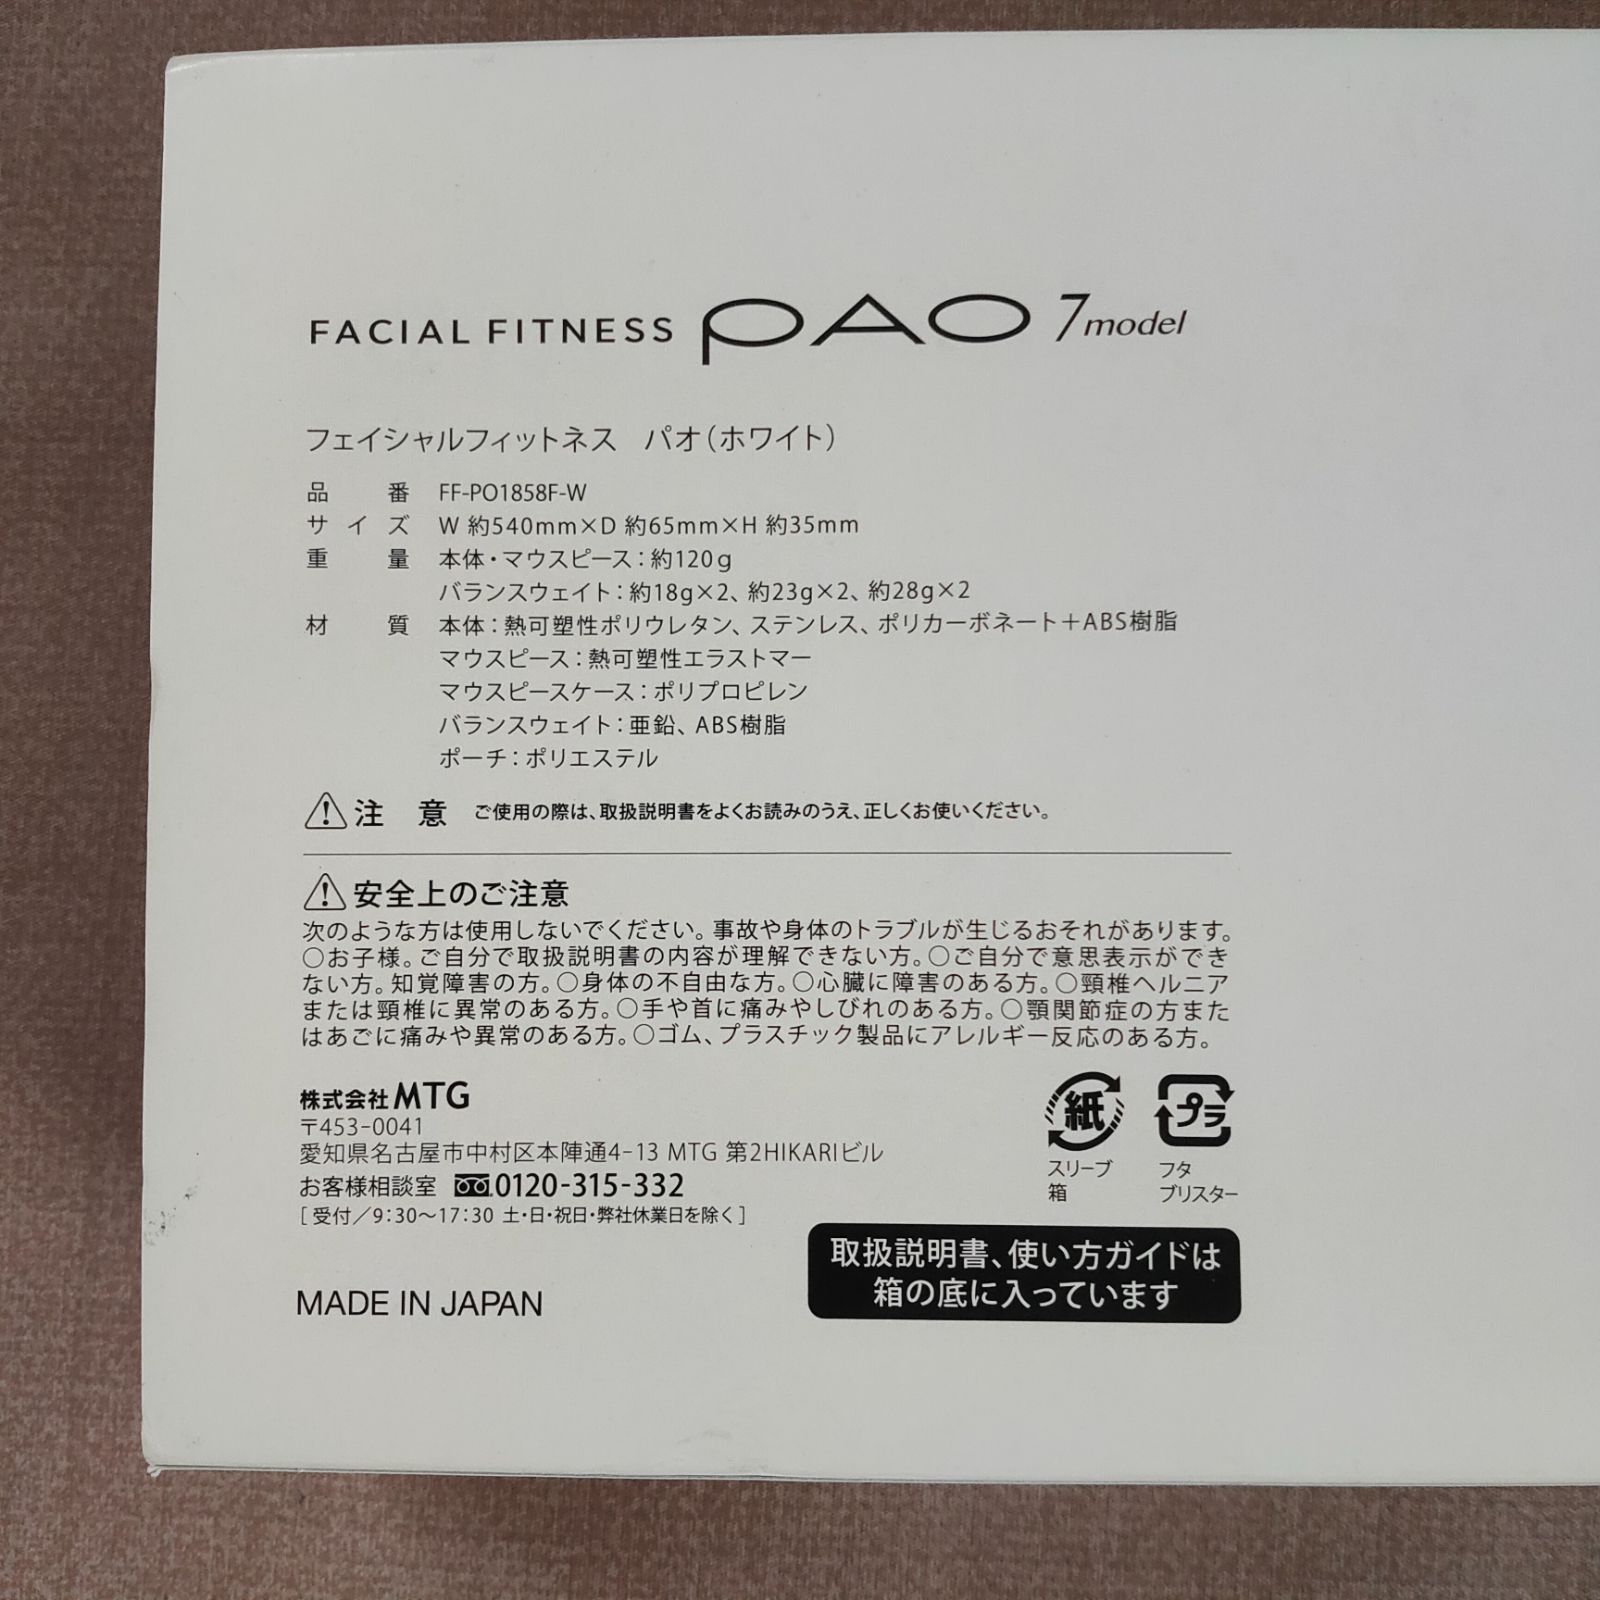 美品】フェイシャルフィットネス パオ 7 モデル PAO 7model 白 - メルカリ